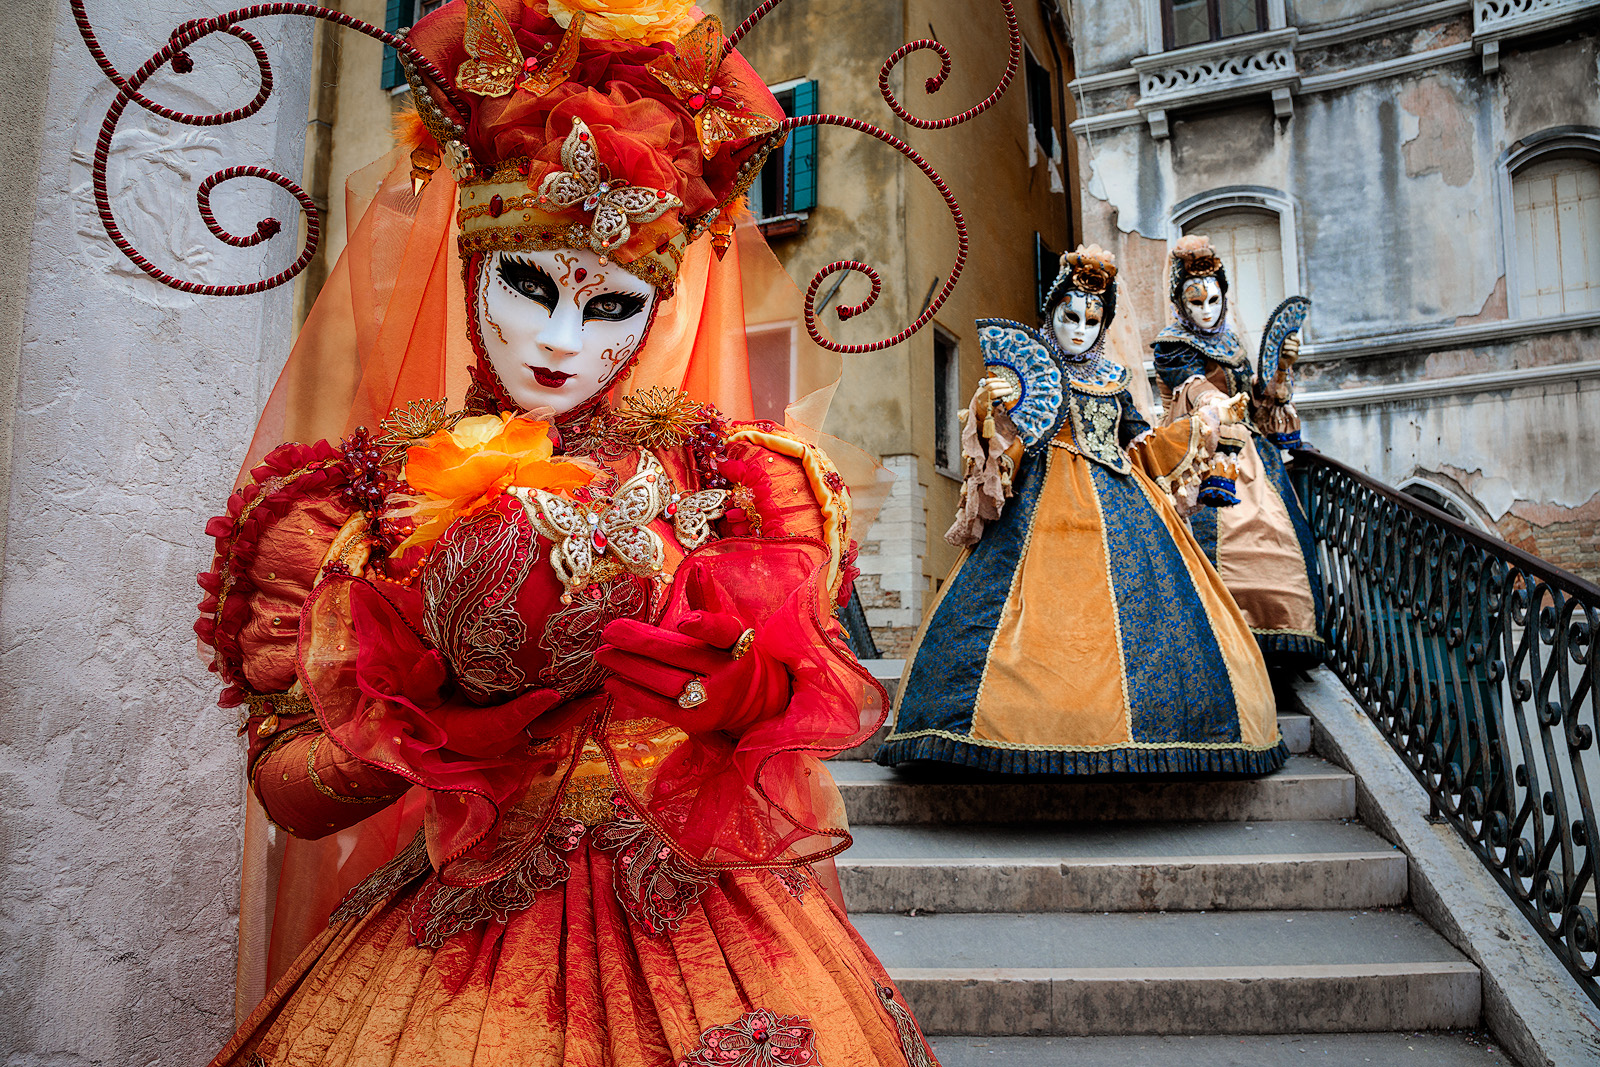 Elegant Carnival models posing on a stairway in Venice.